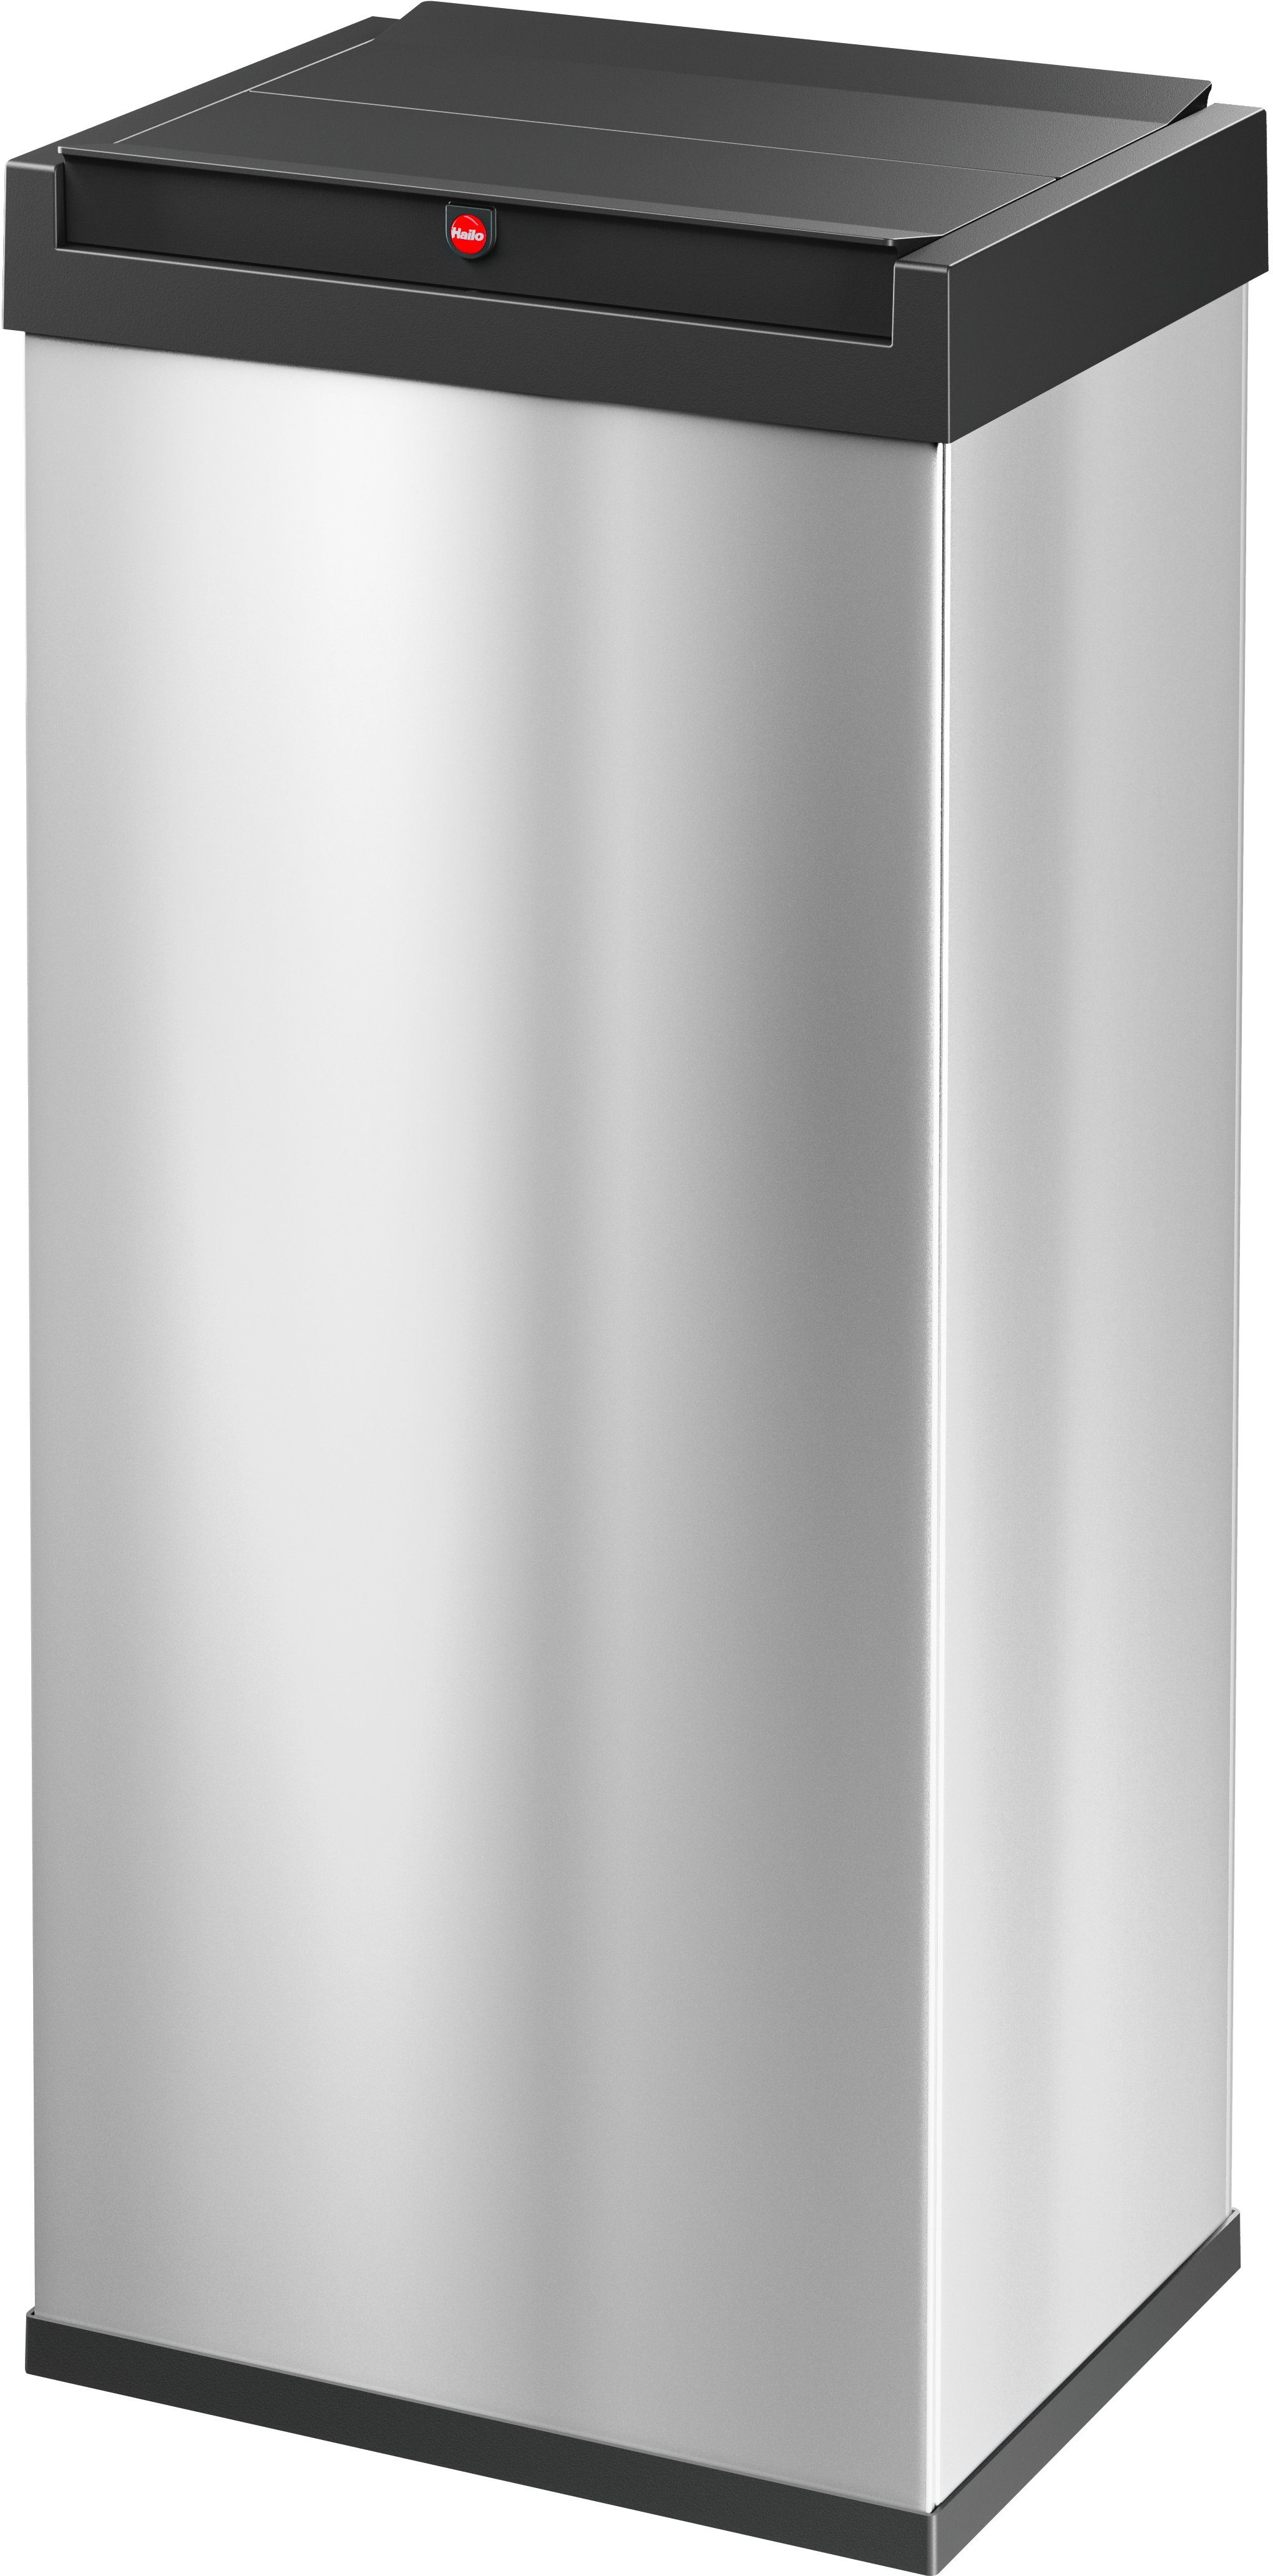 Hailo Mülleimer Big-Box Swing XL, 52 l, Stahlblech o. Edelstahl, mit selbstschließendem Schwingdeckel edelstahlfarben/schwarz | Mülleimer